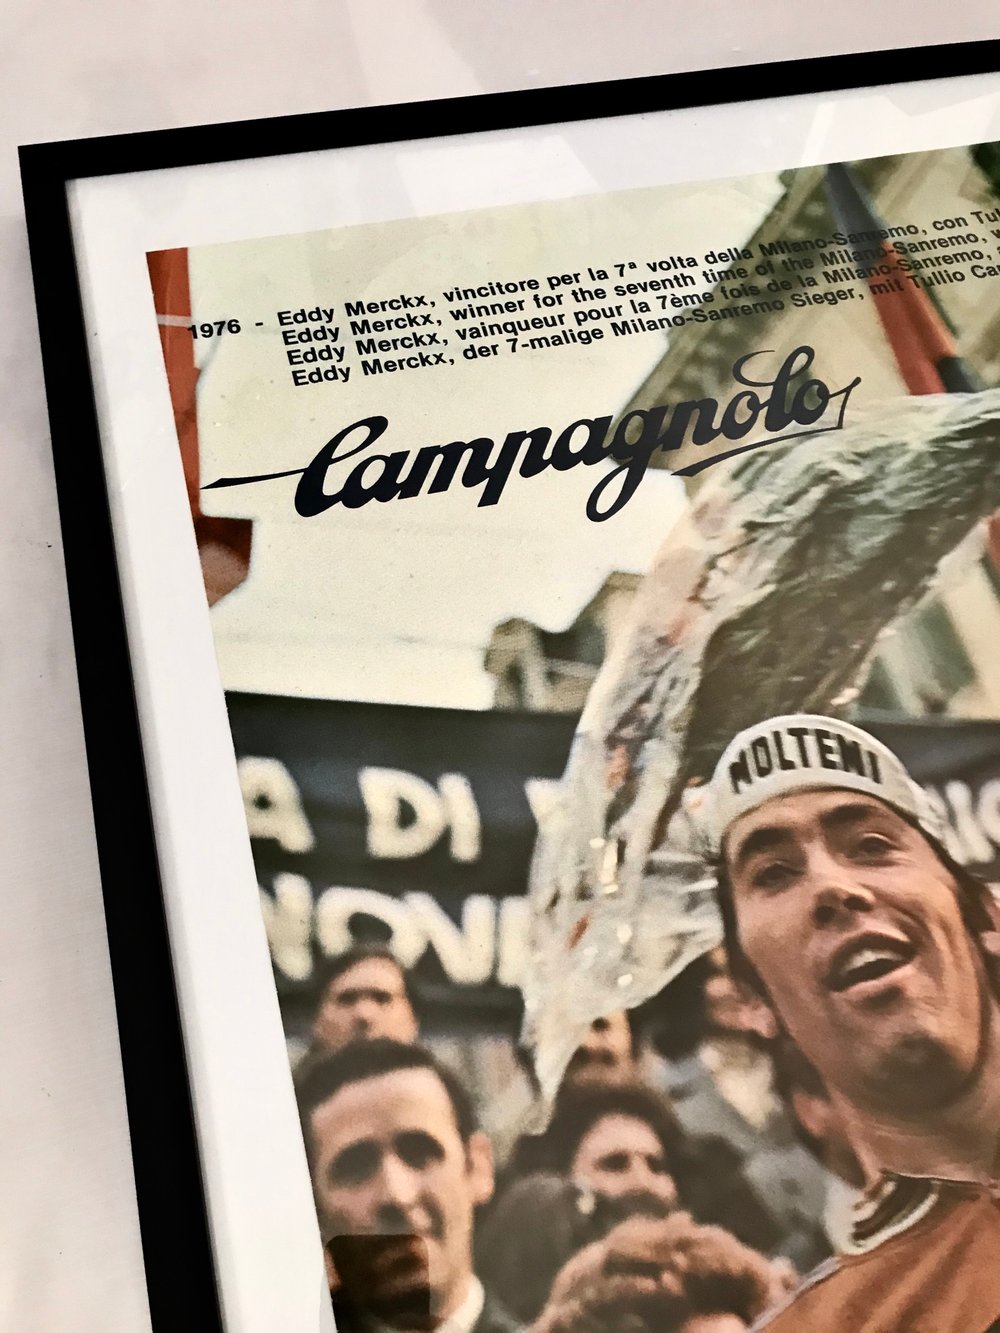 1978 Campagnolo Poster of Eddy Merckx & Tulio Campagnolo 